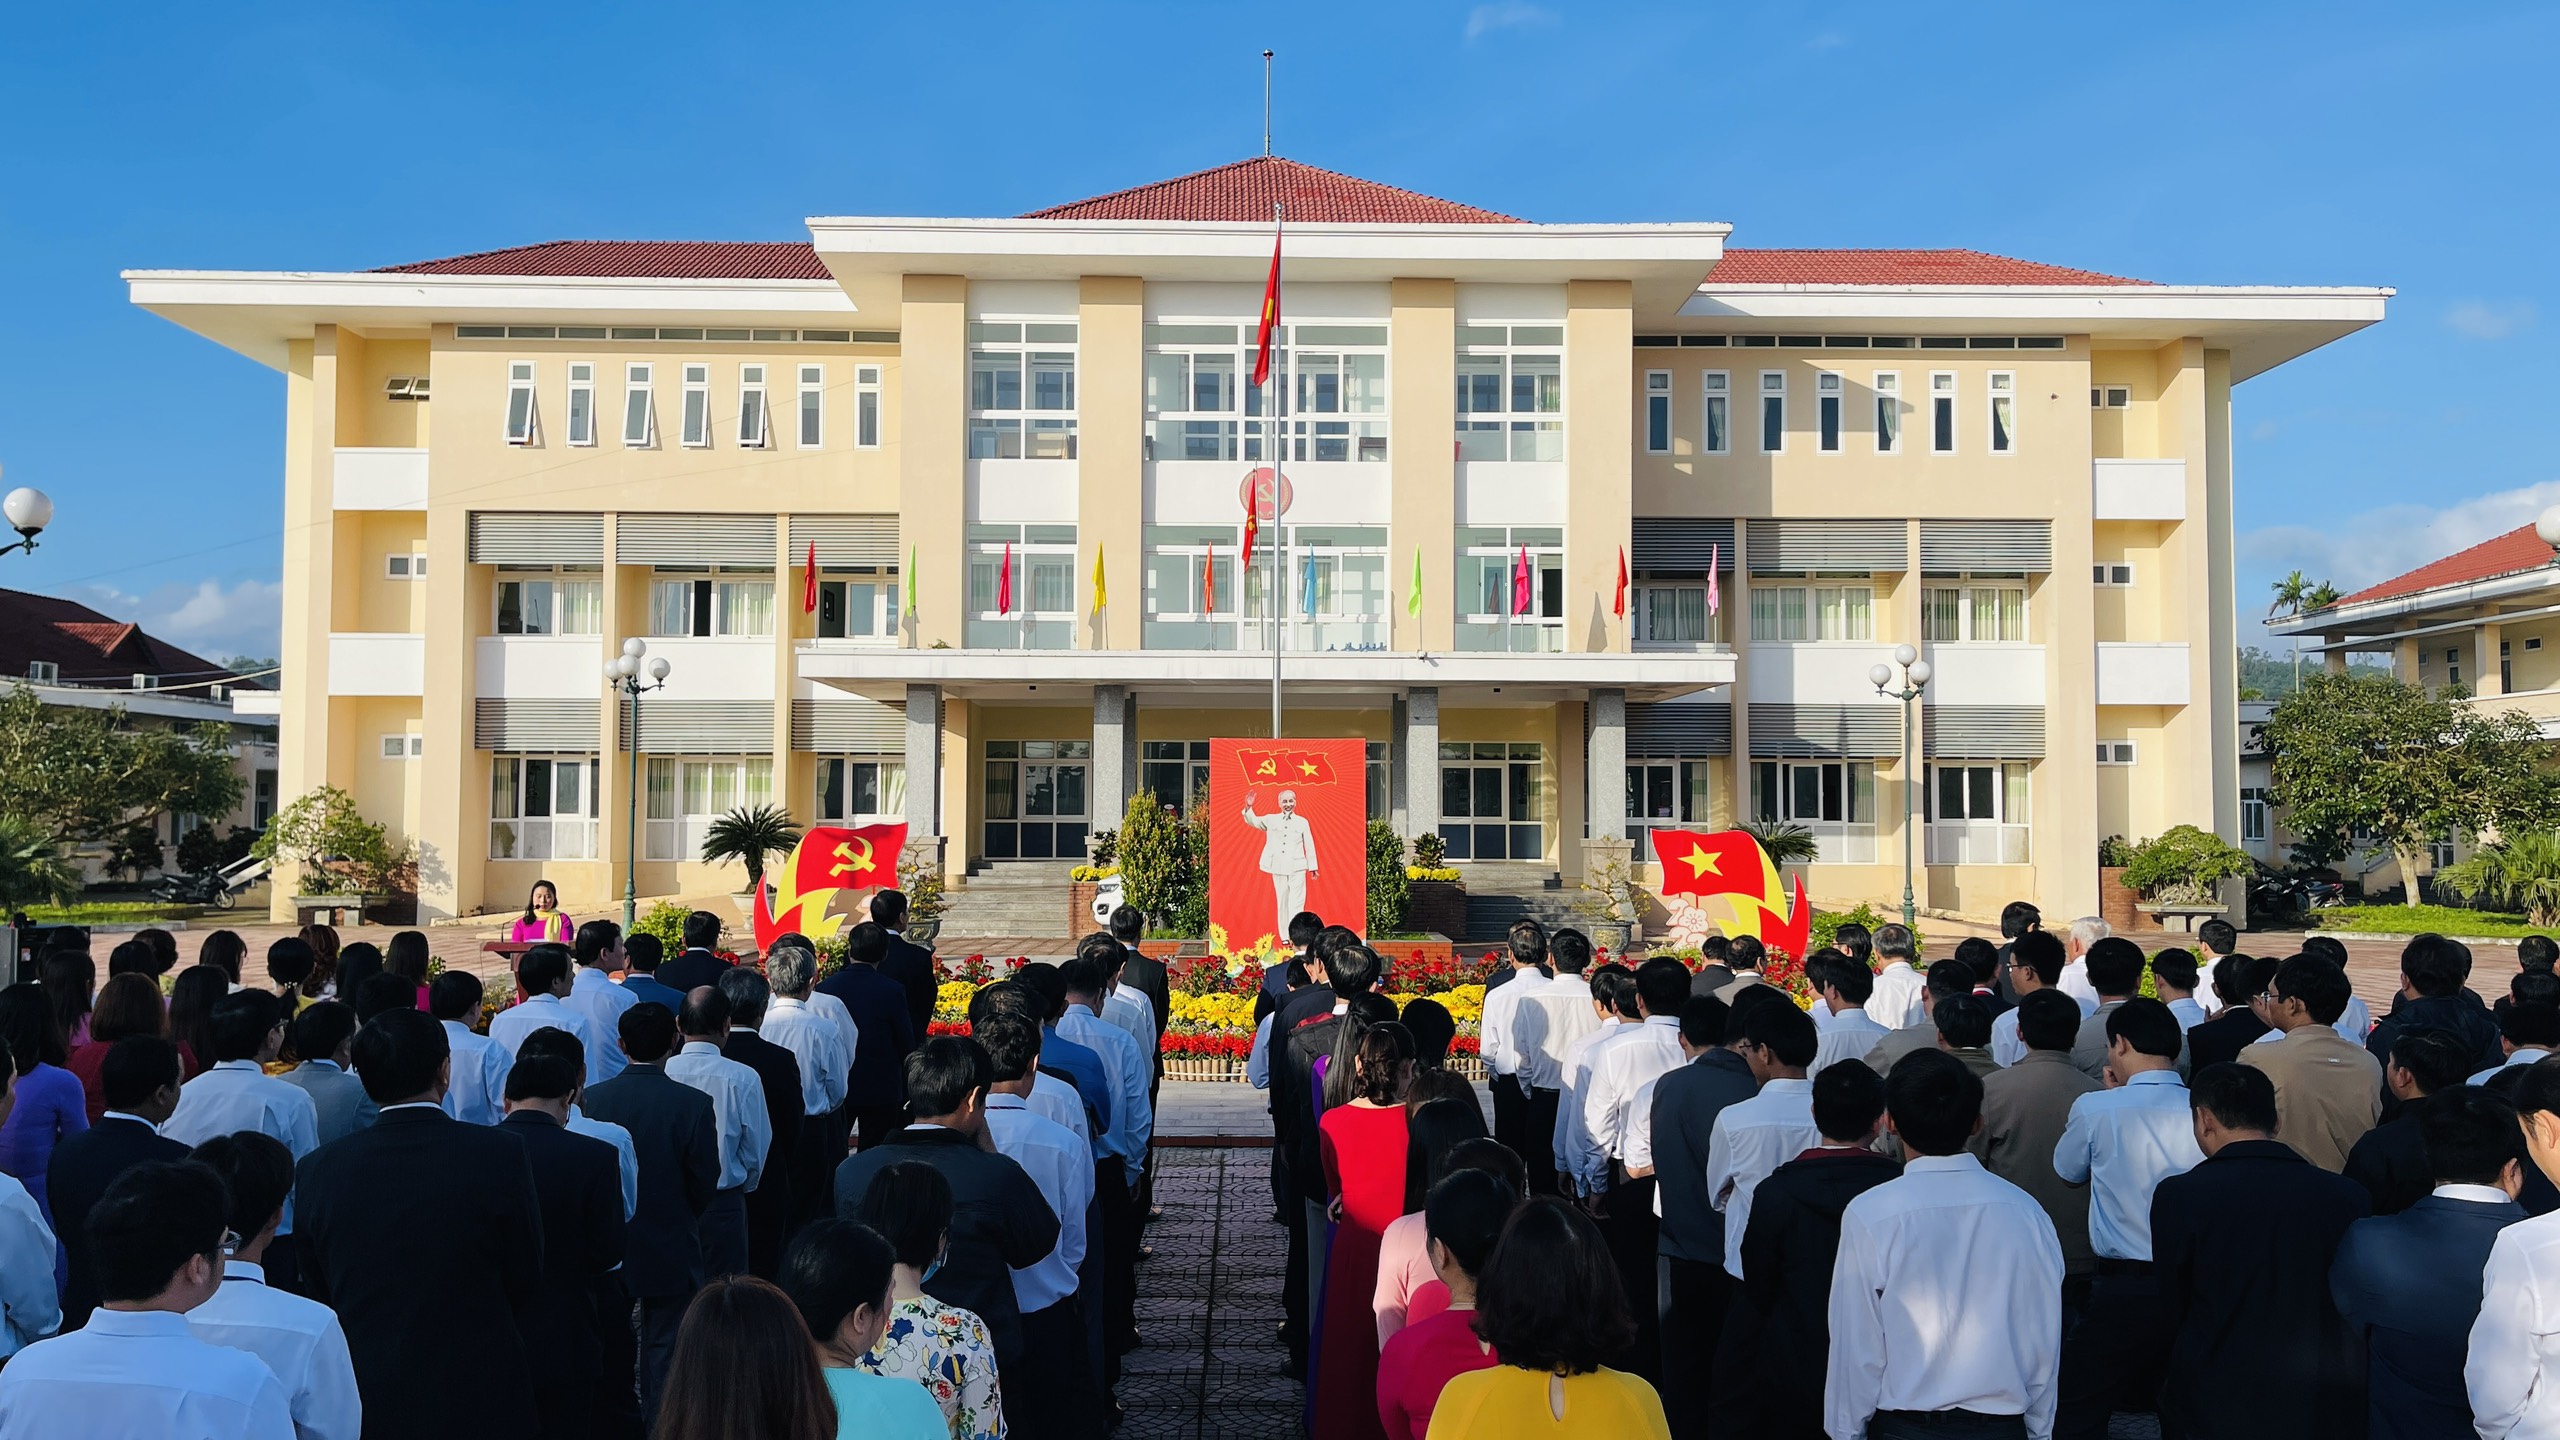 Huyện ủy Mộ Đức tổ chức Chào cờ nhân dịp Kỷ niệm 93 năm Ngày thành lập Đảng Cộng sản Việt Nam (3/2/1930 - 3/2/2023)